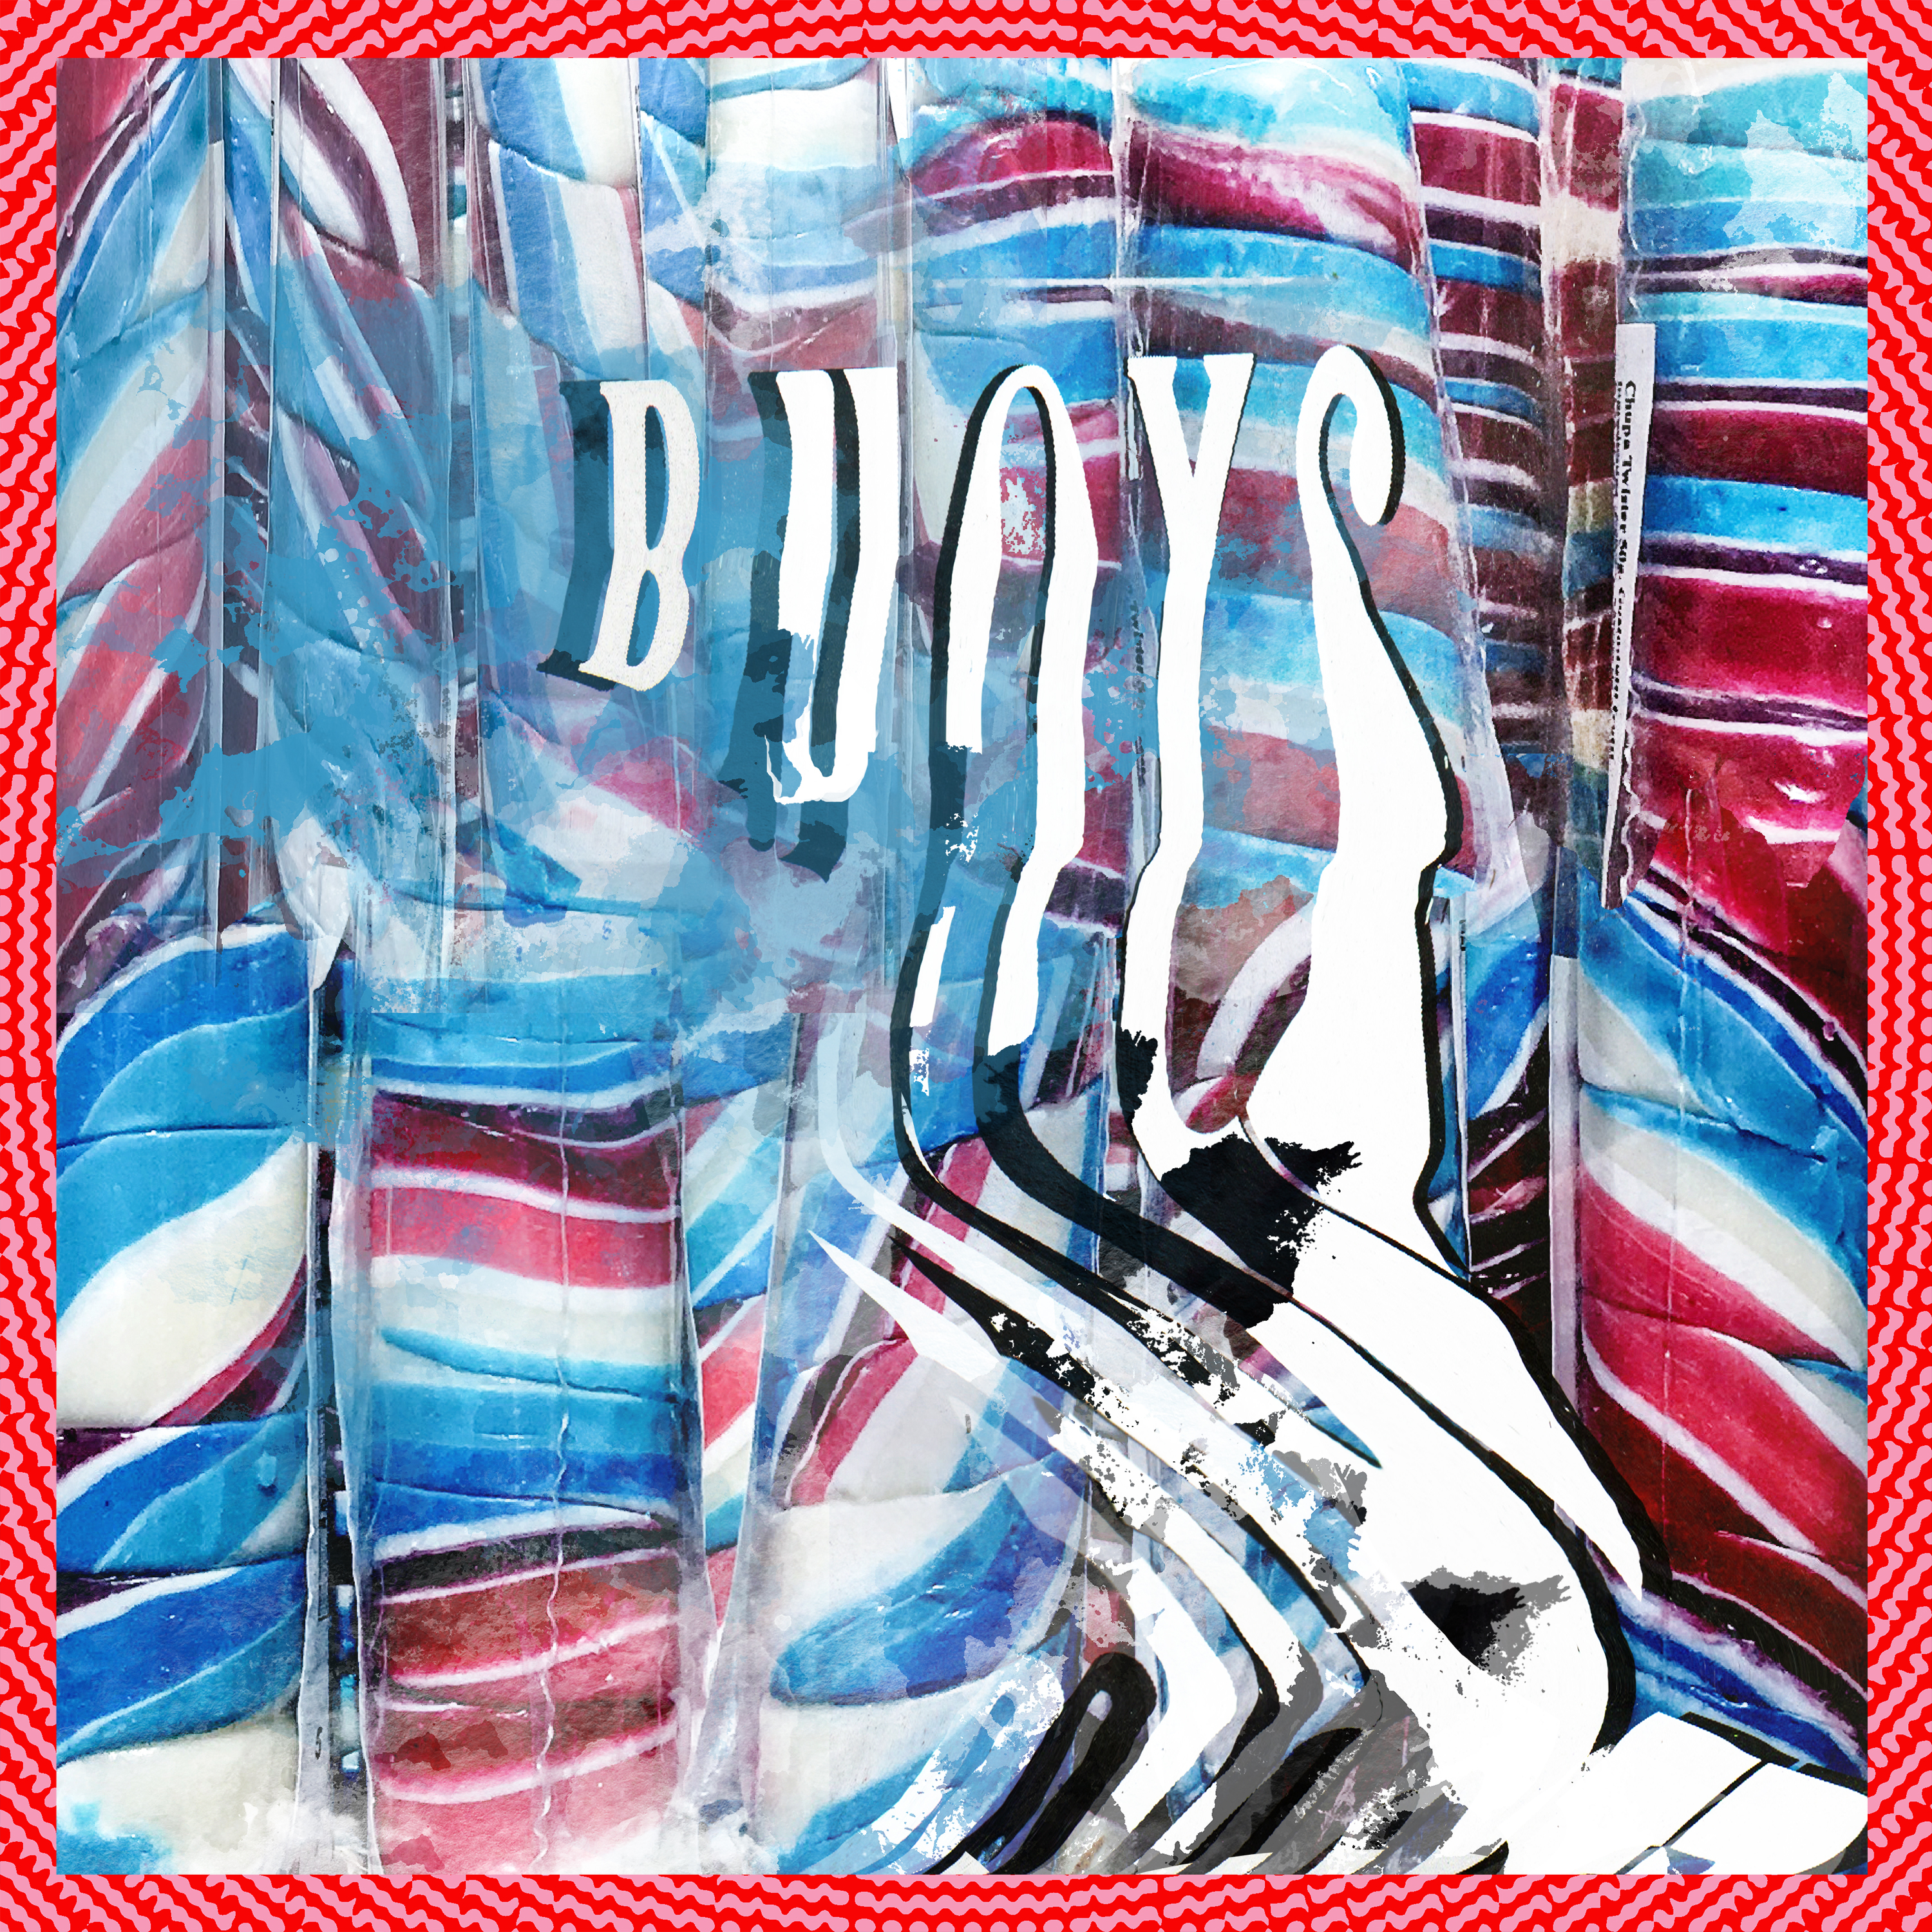 Buoys (Vinyl)